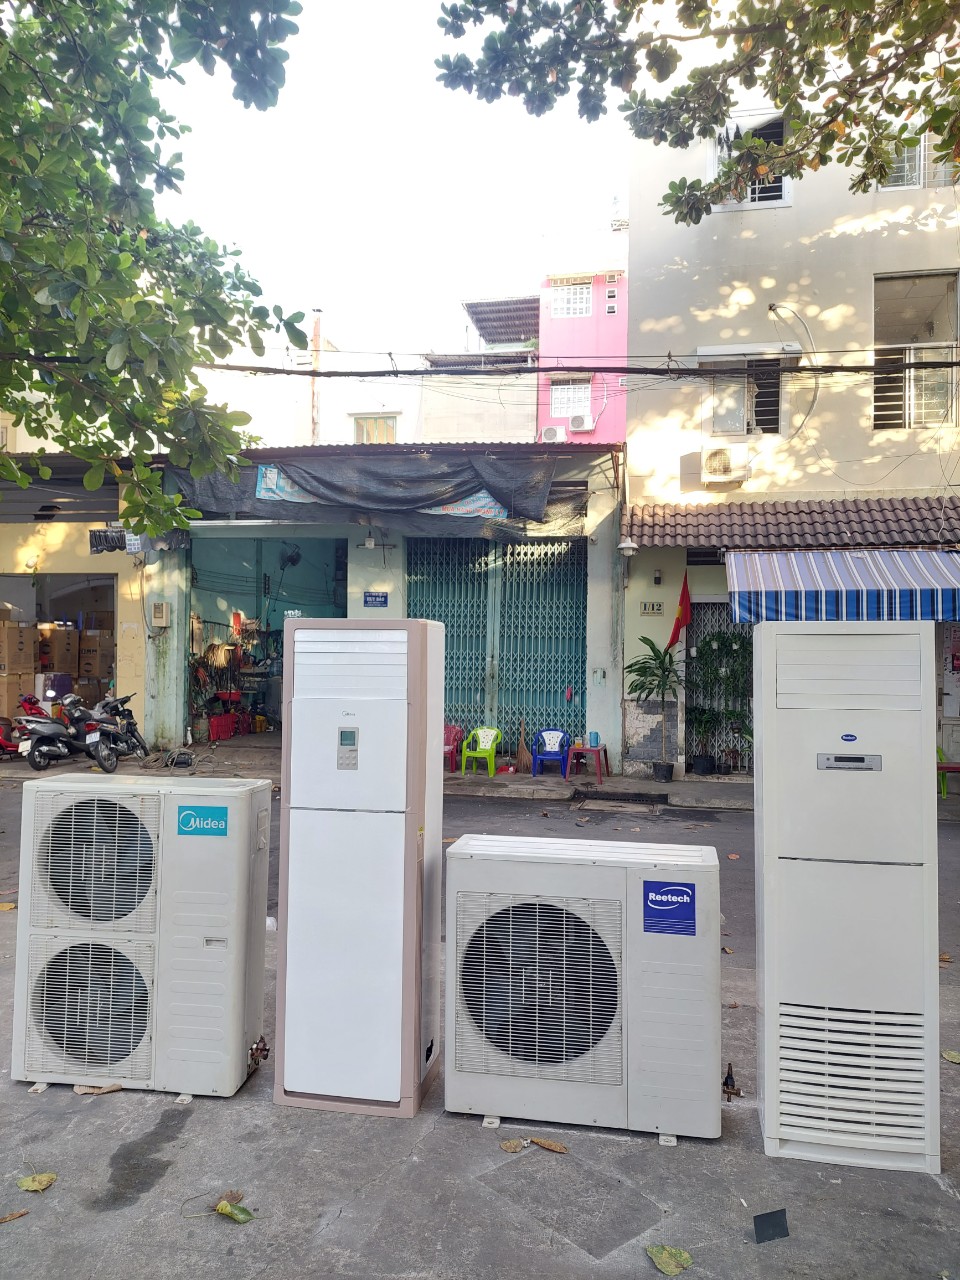 Nếu bạn đang có nhu cầu tìm kiếm một địa điểm thu mua máy lạnh cũ quận Bình Tân uy tín chuyên nghiệp và được giá nhất thì hãy gọi Thu mua máy lạnh cũ bình tân 0907 243 680 Mr Bảo